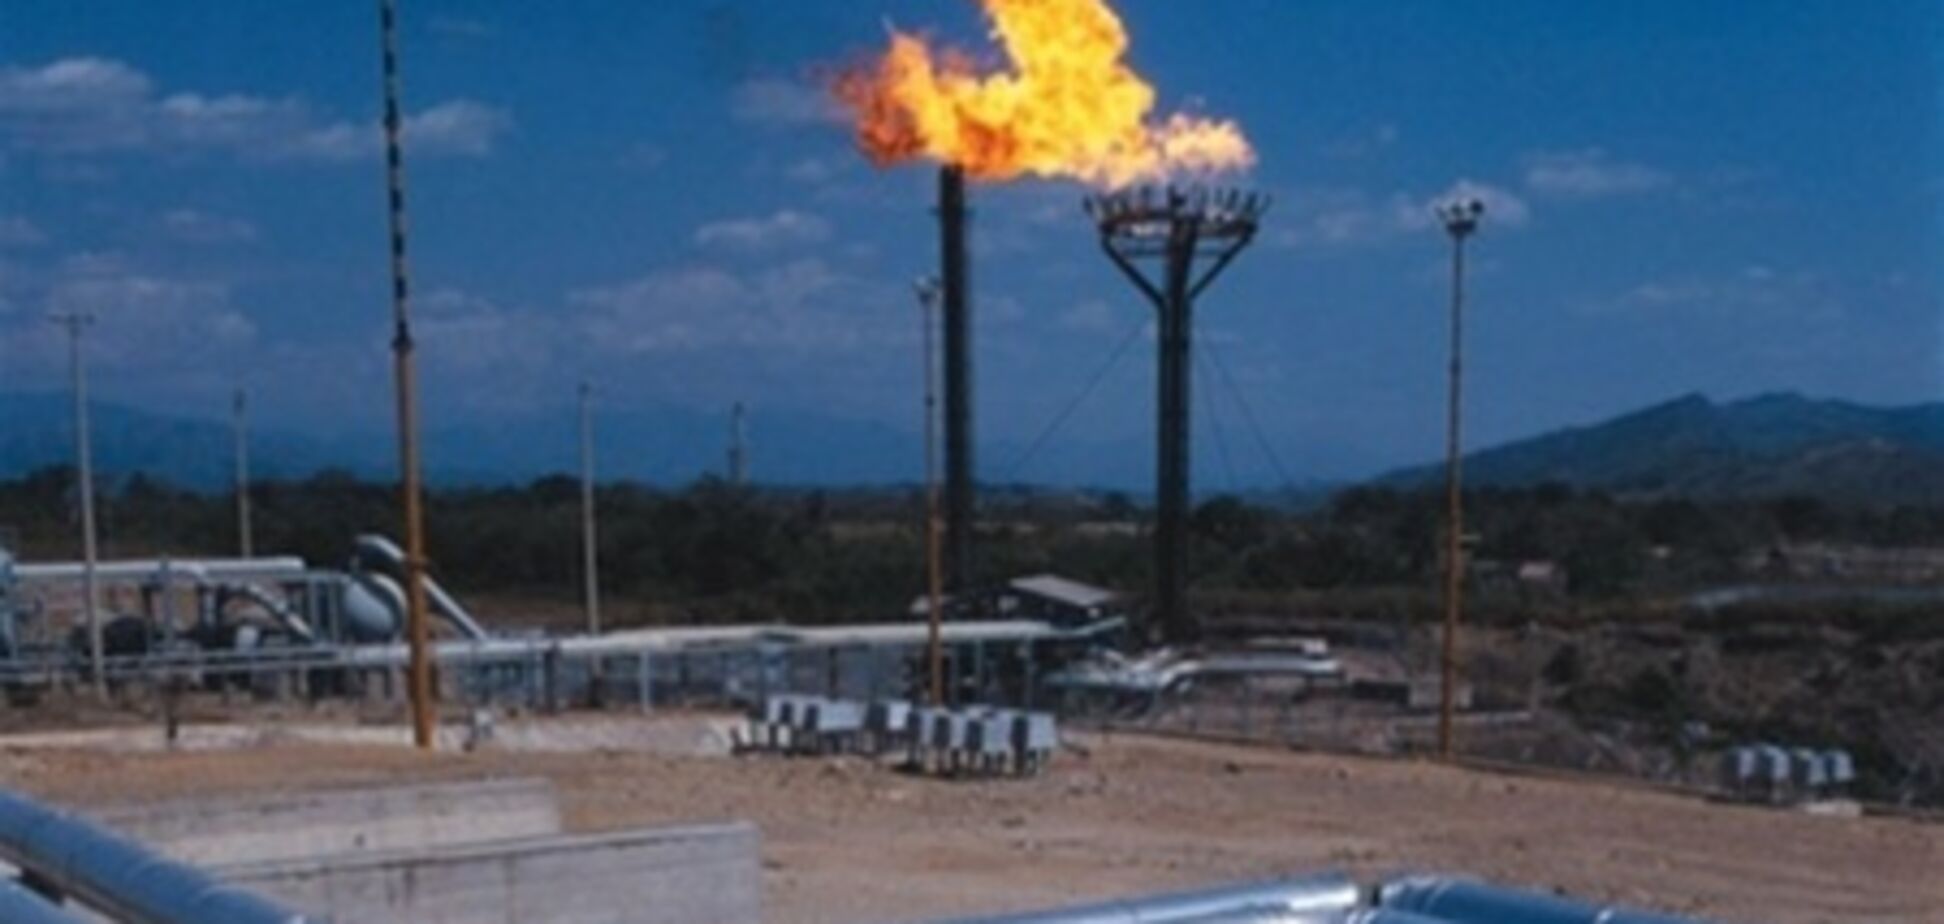 Азаров: сейчас рентабельно развивать даже старые месторождения газа